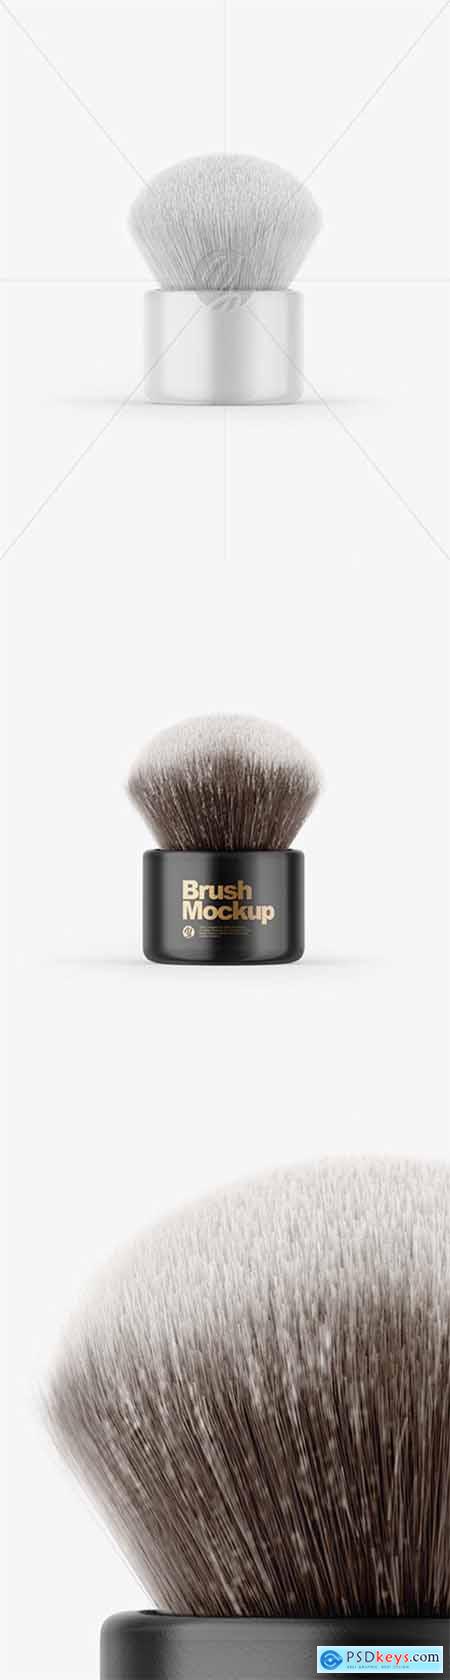 Glossy Powder Brush Mockup 64315